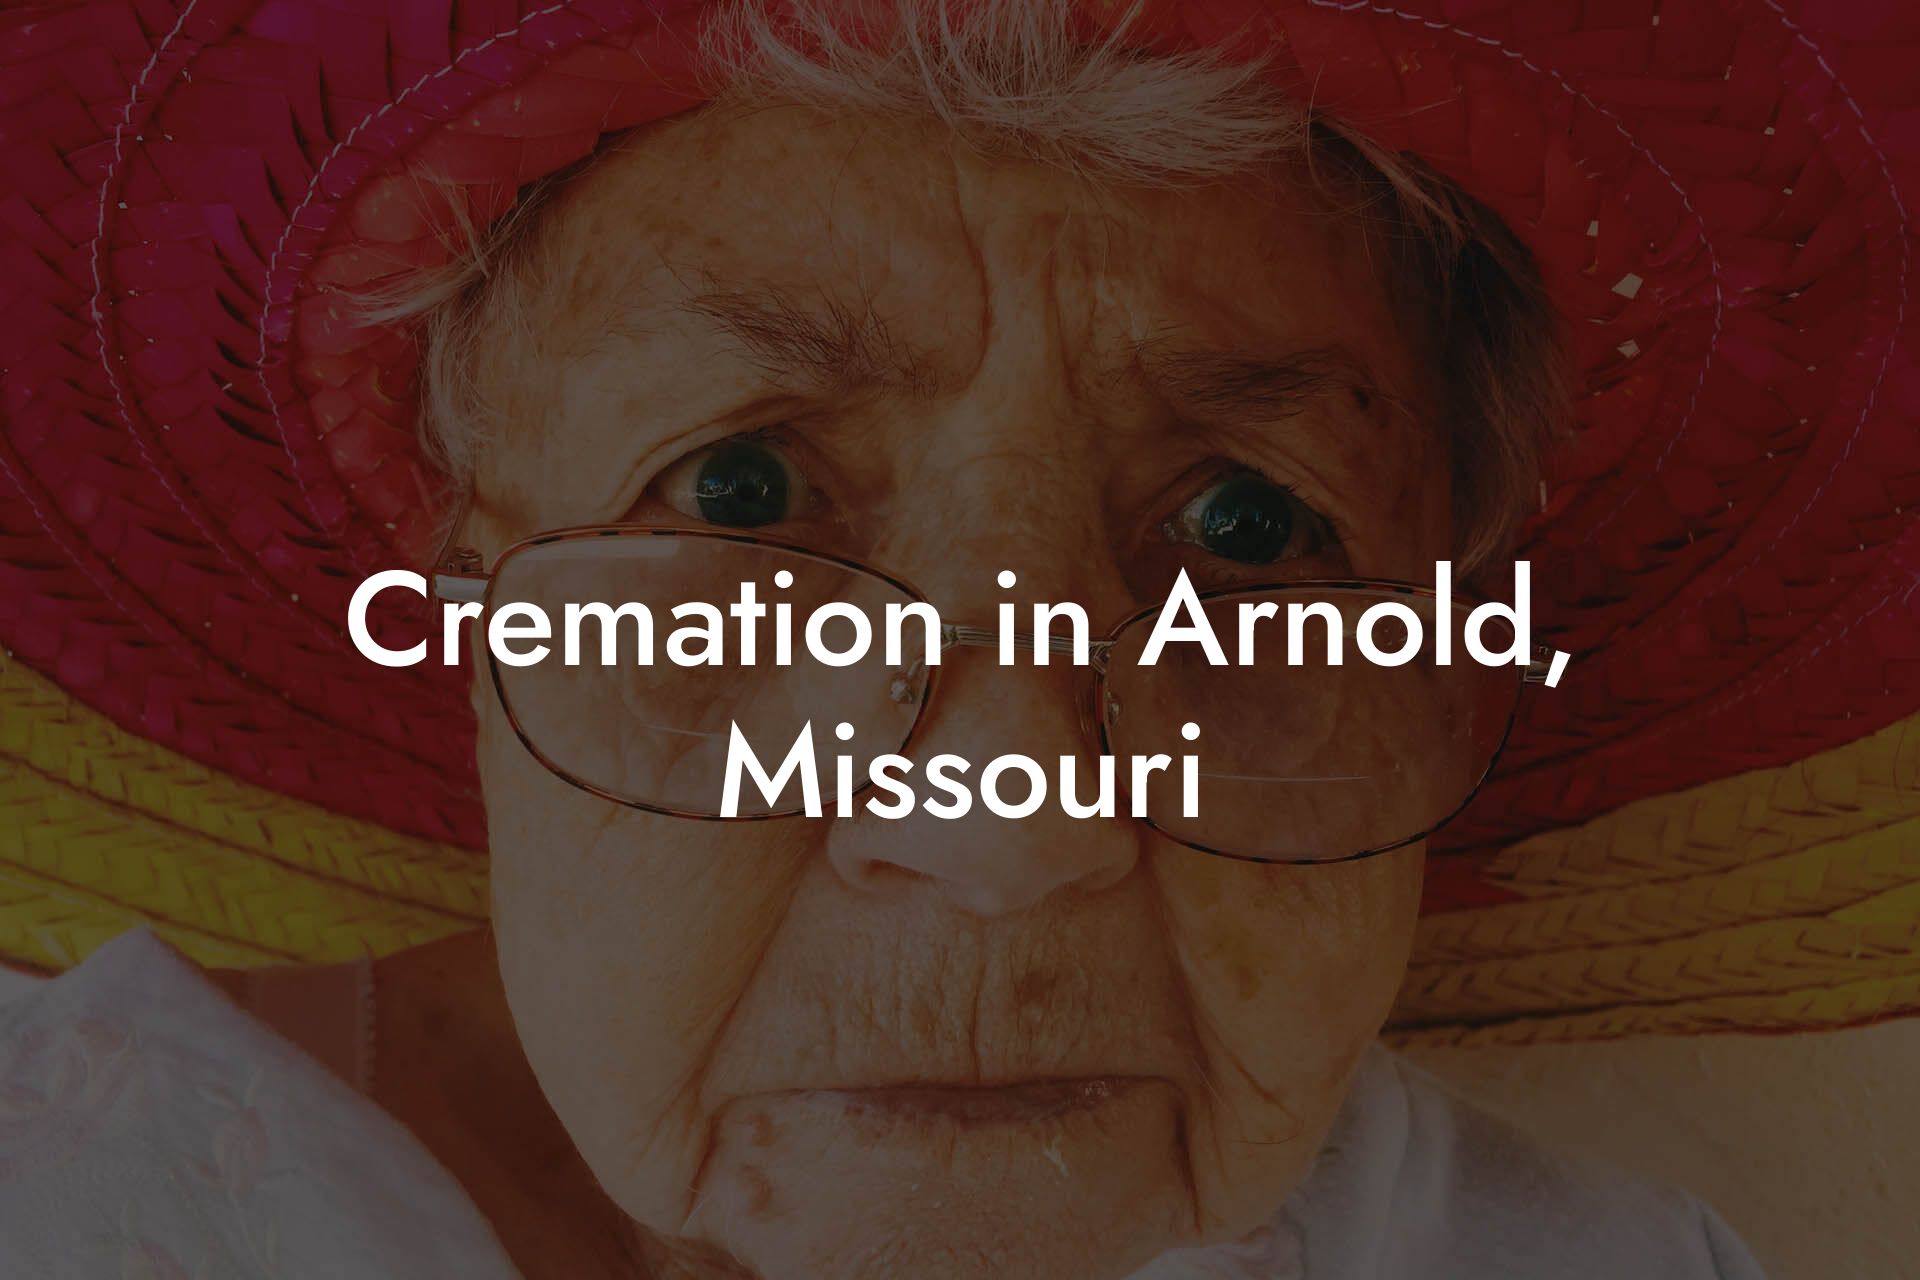 Cremation in Arnold, Missouri